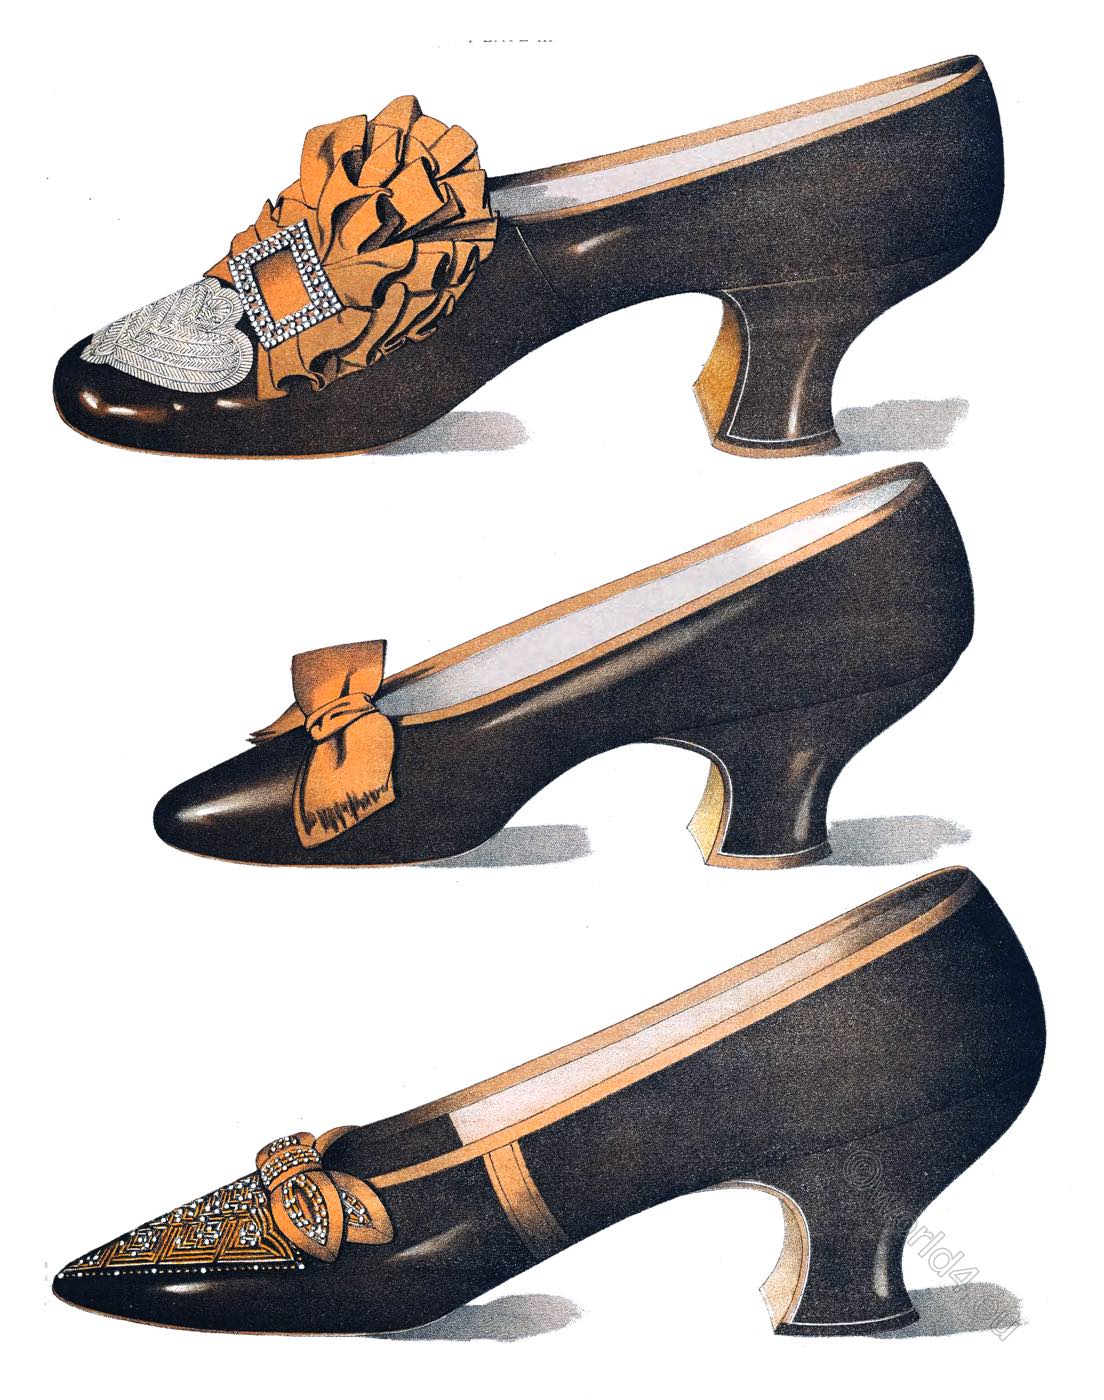 Bronze stage shoe of Ada Cavendish with Louis heel. Victorian Era.